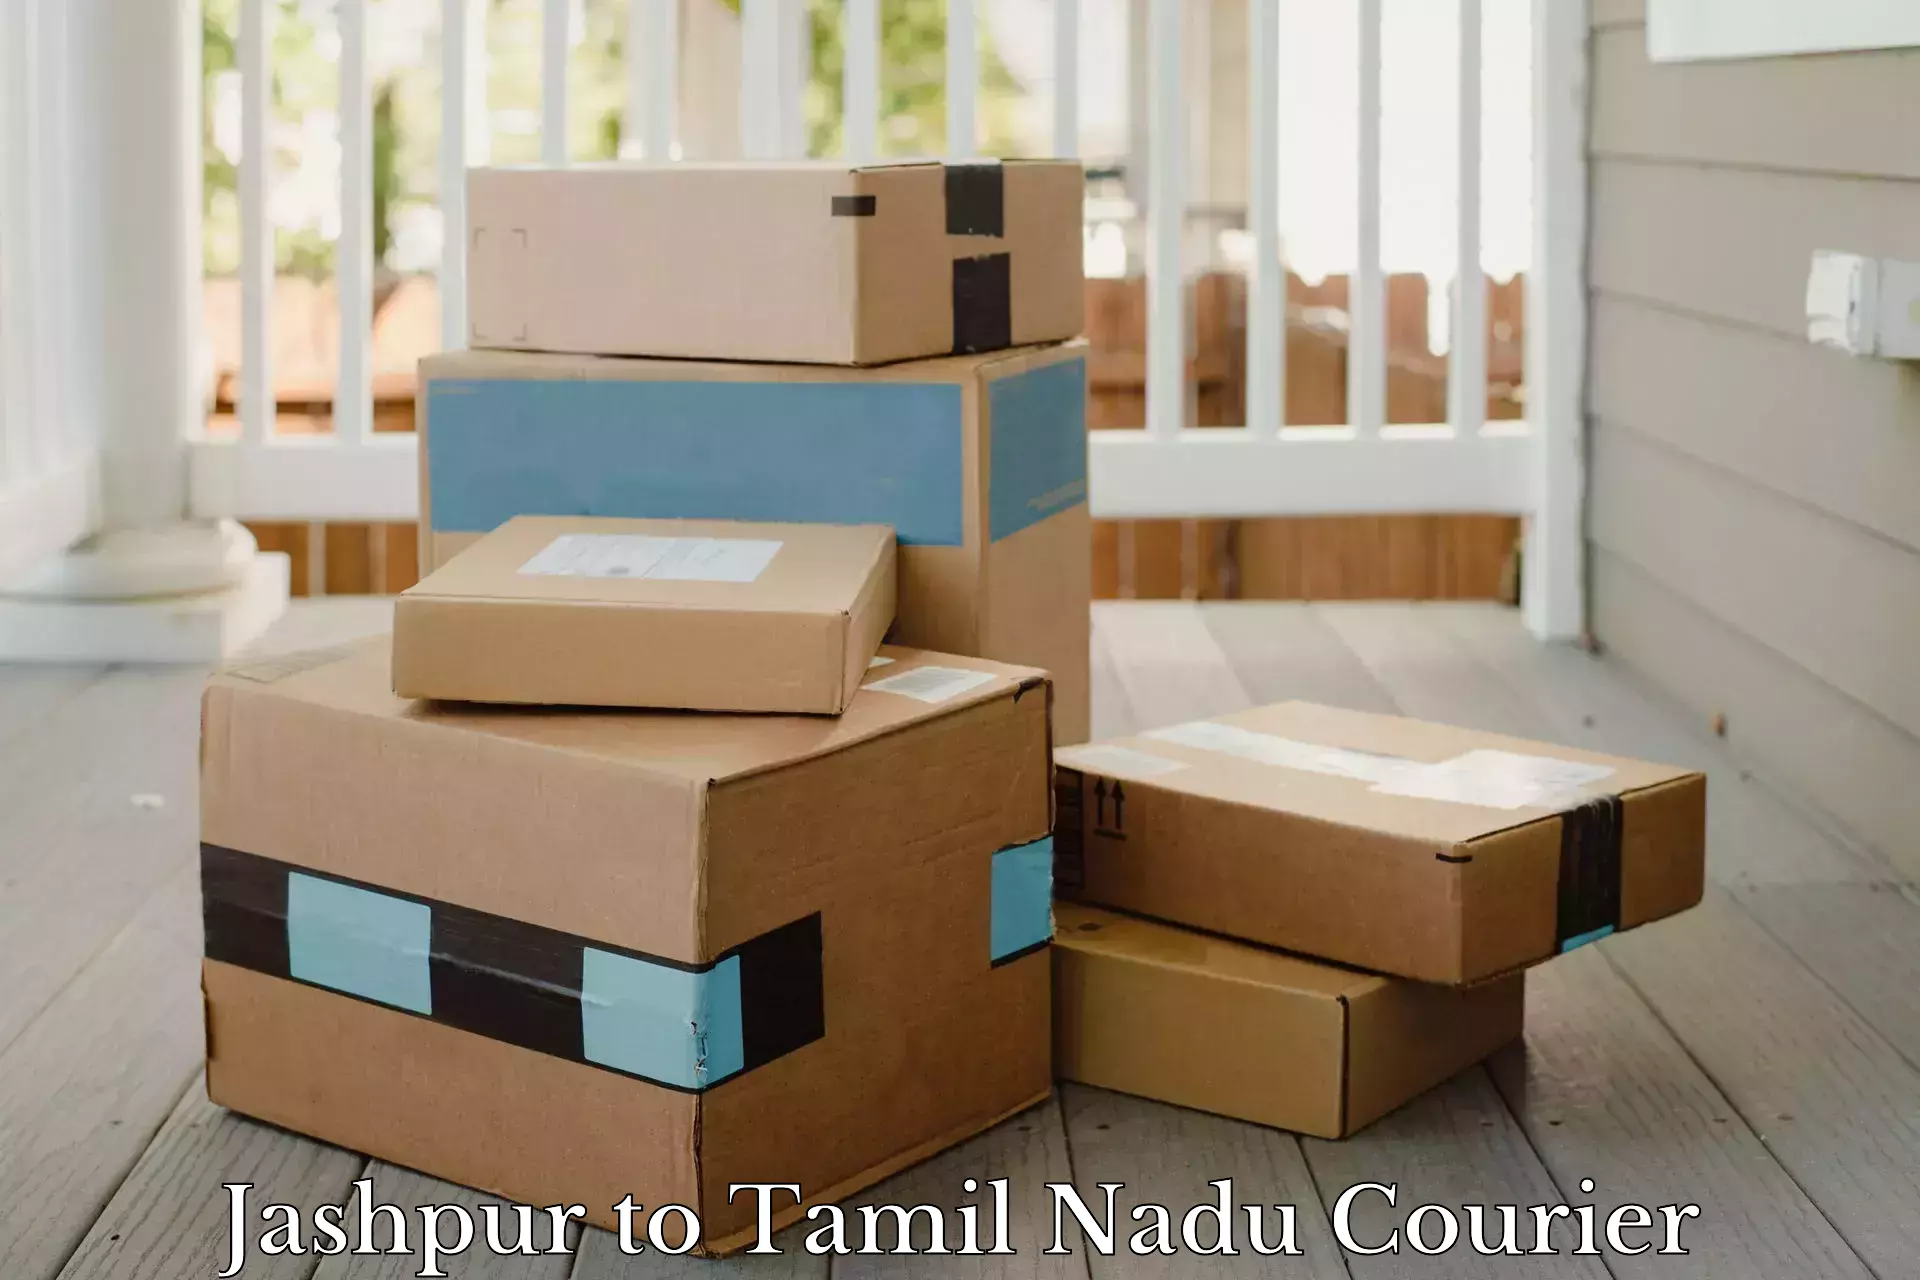 Doorstep parcel pickup in Jashpur to Tamil Nadu